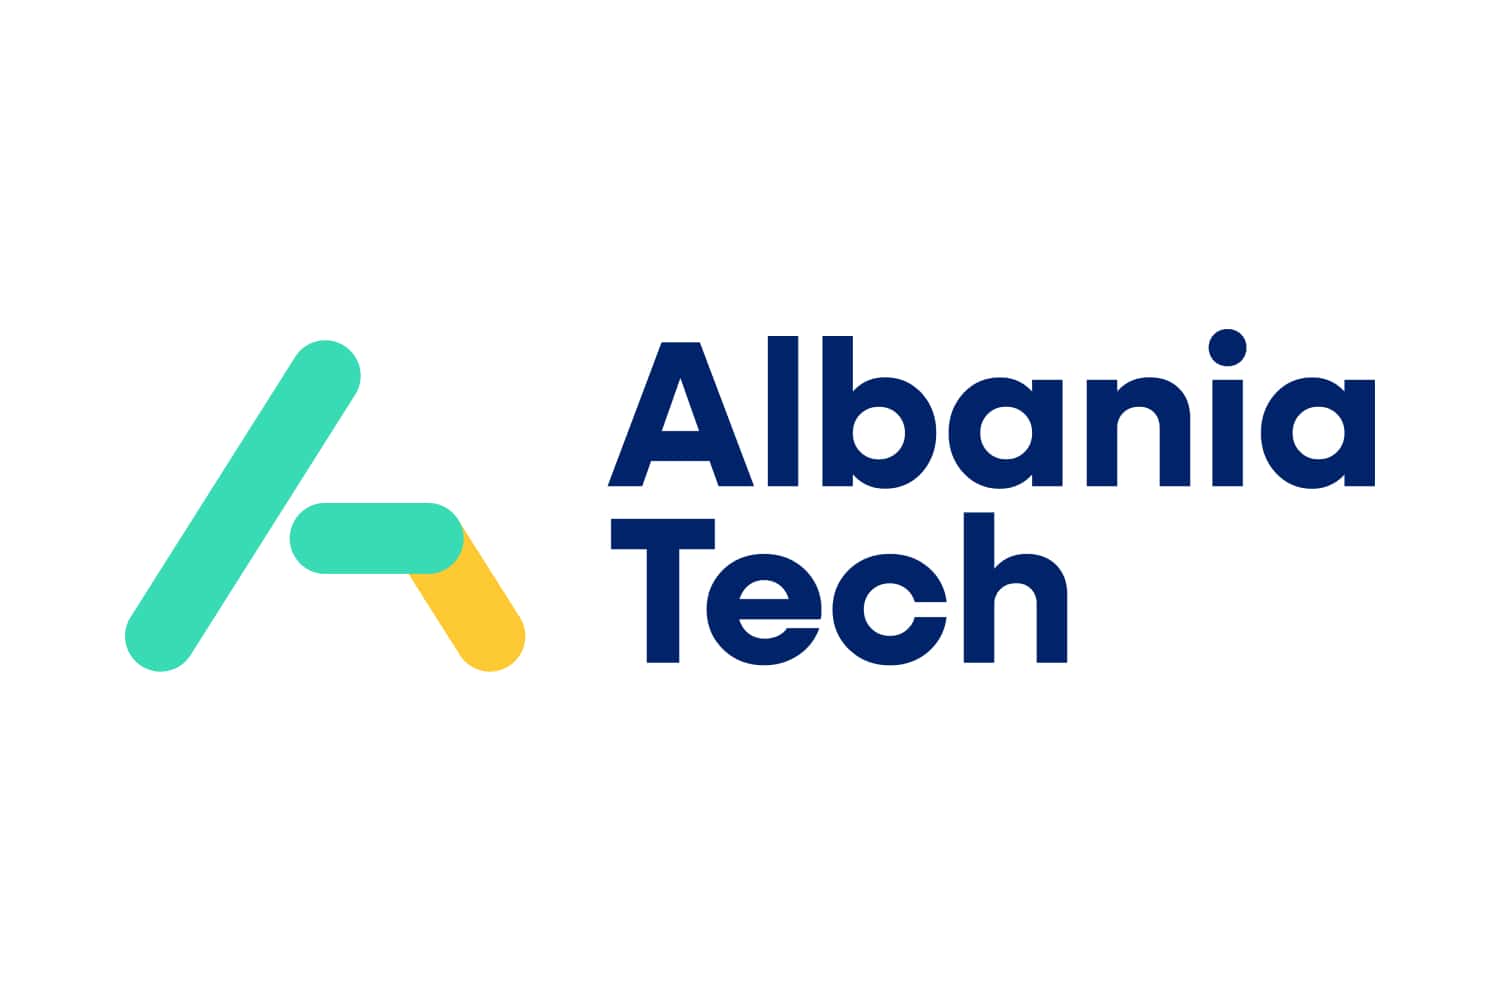 Albania Tech logo